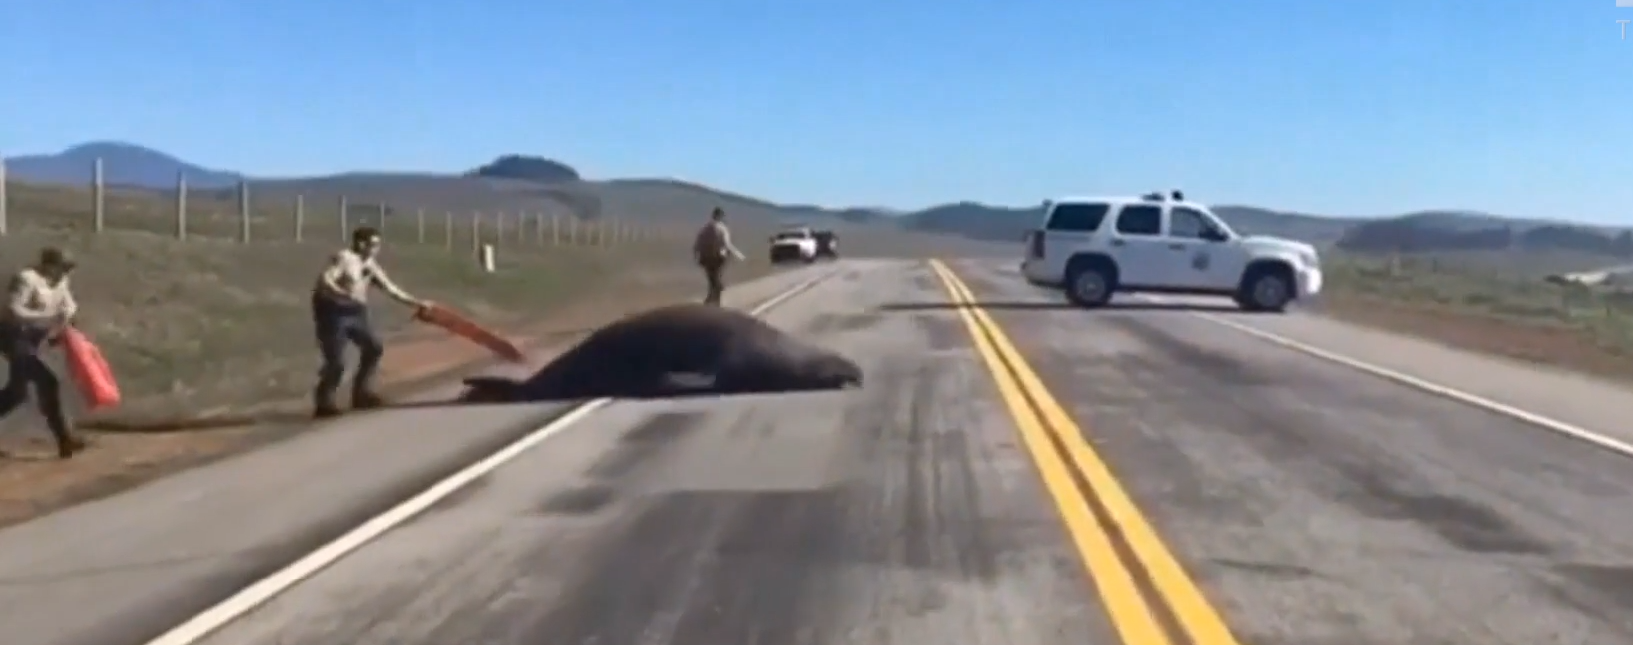 Морський слон заблокував автостраду у Каліфорнії